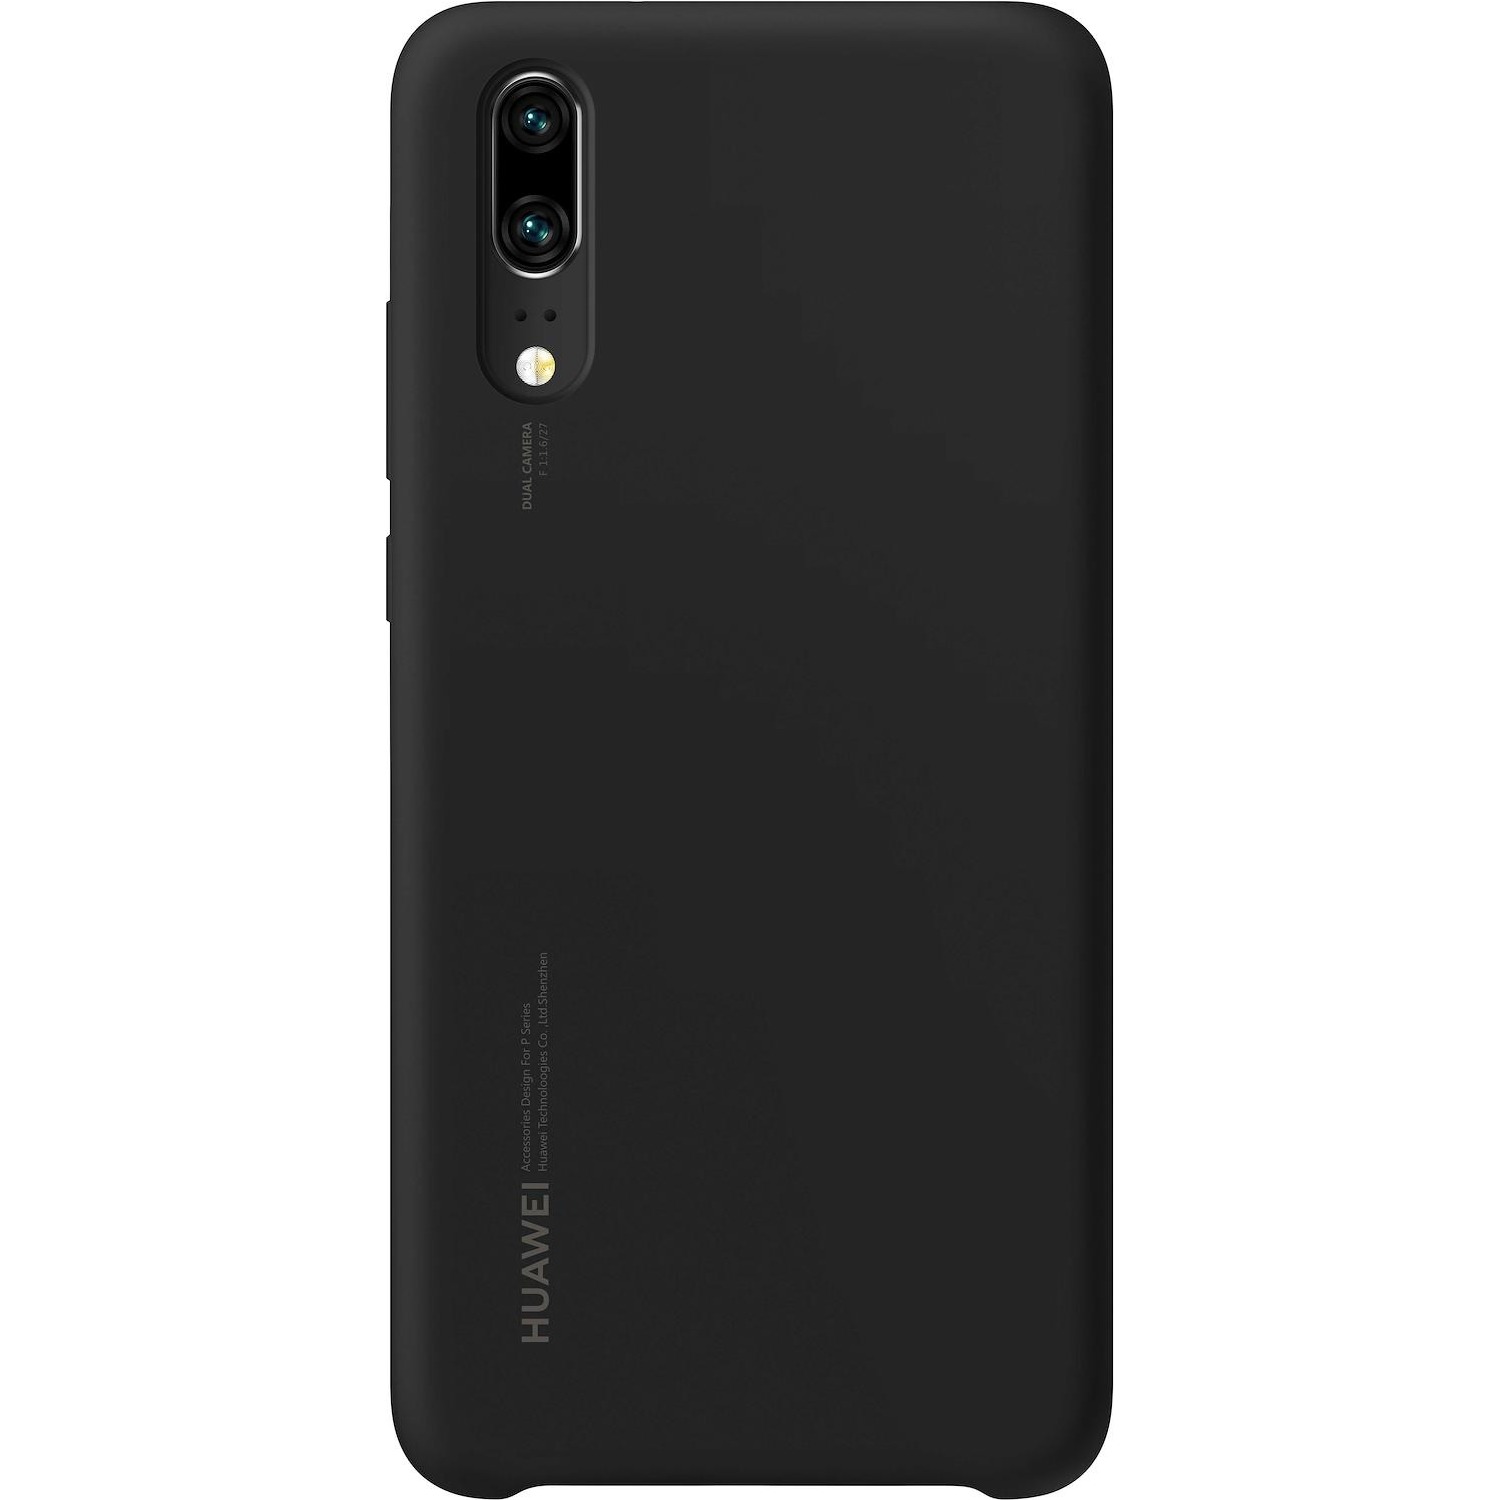 Immagine per Silicon Gel Case per Huawei P20 colore black da DIMOStore